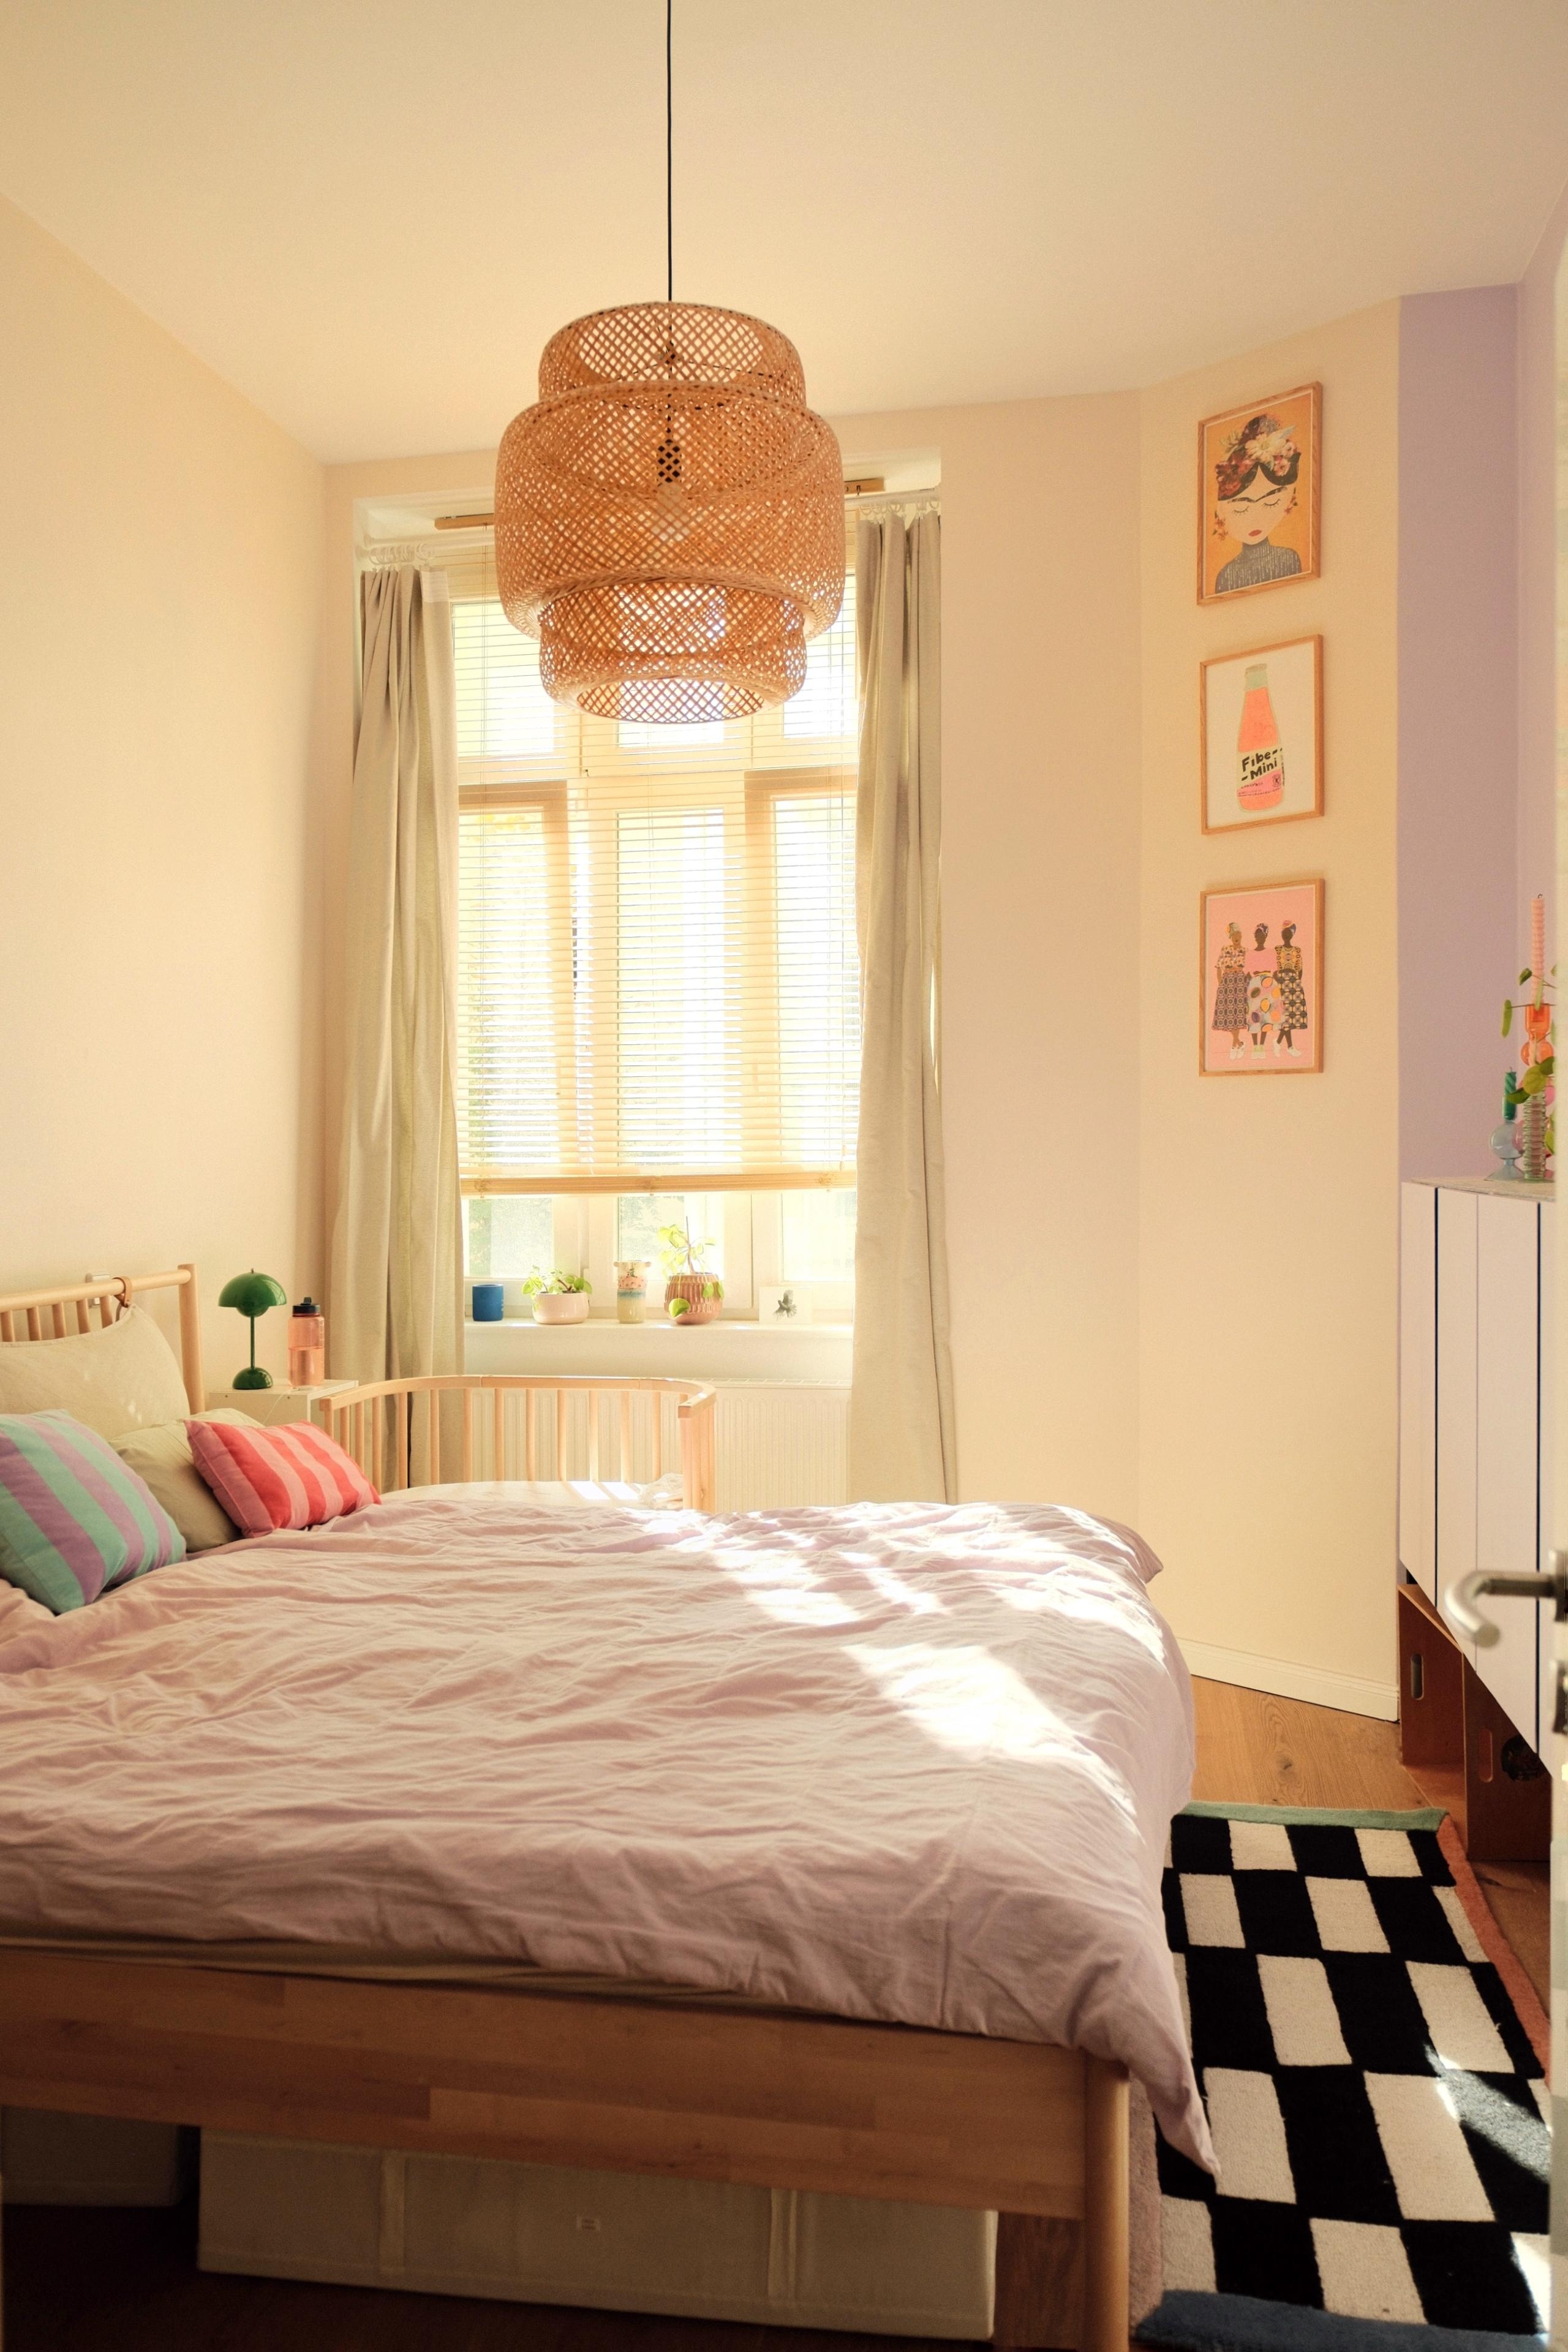 #schlafzimmer #kleinesschlafzimmer  #altbauwohnung #couchliebt #gemütlich #farbenfroh #interior #rattan #teppich